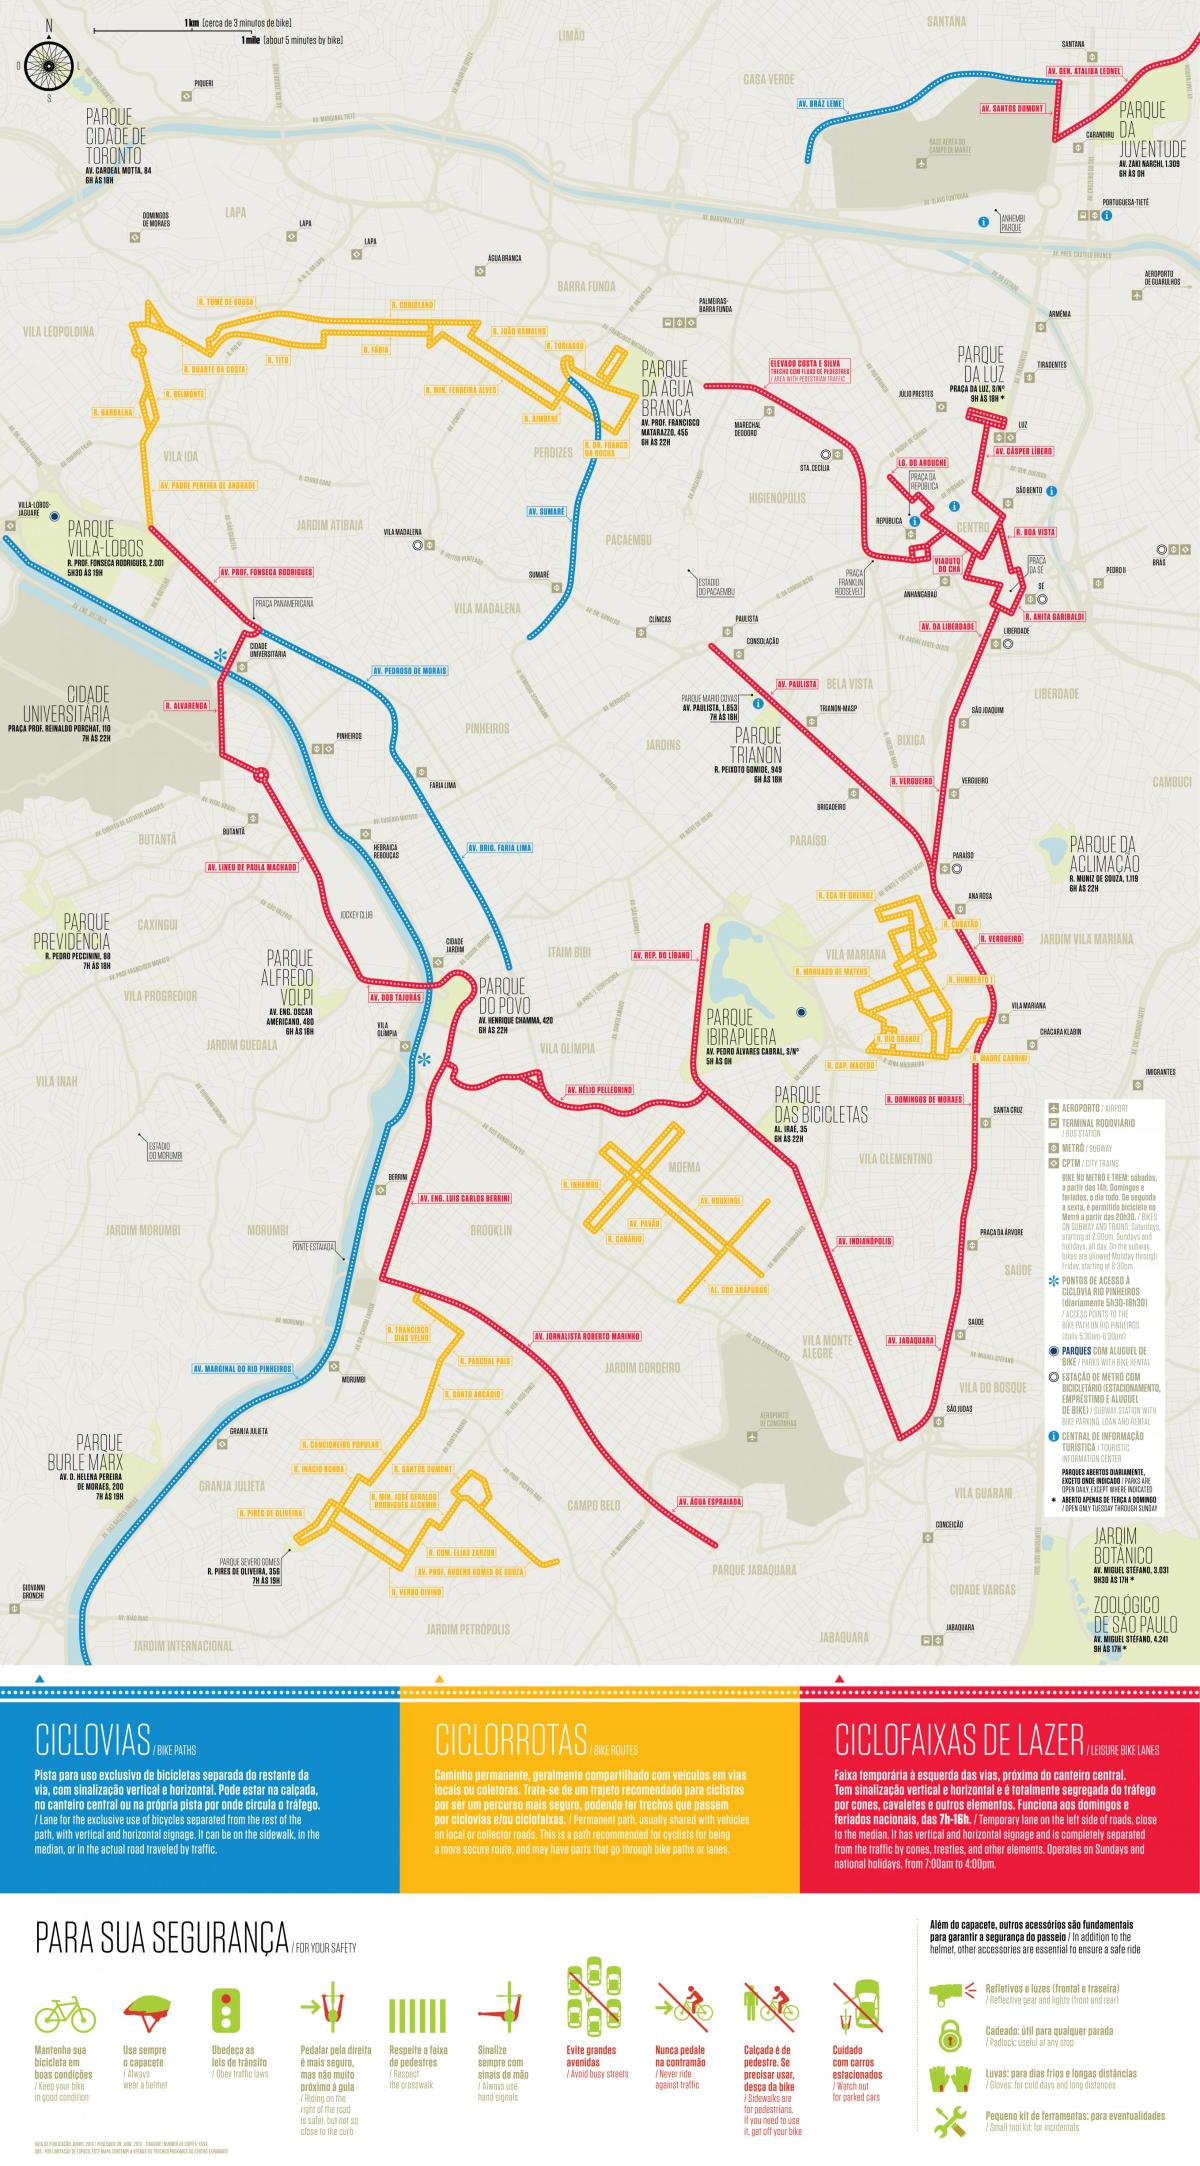 Mapa do caminho de bicicletas em São Paulo